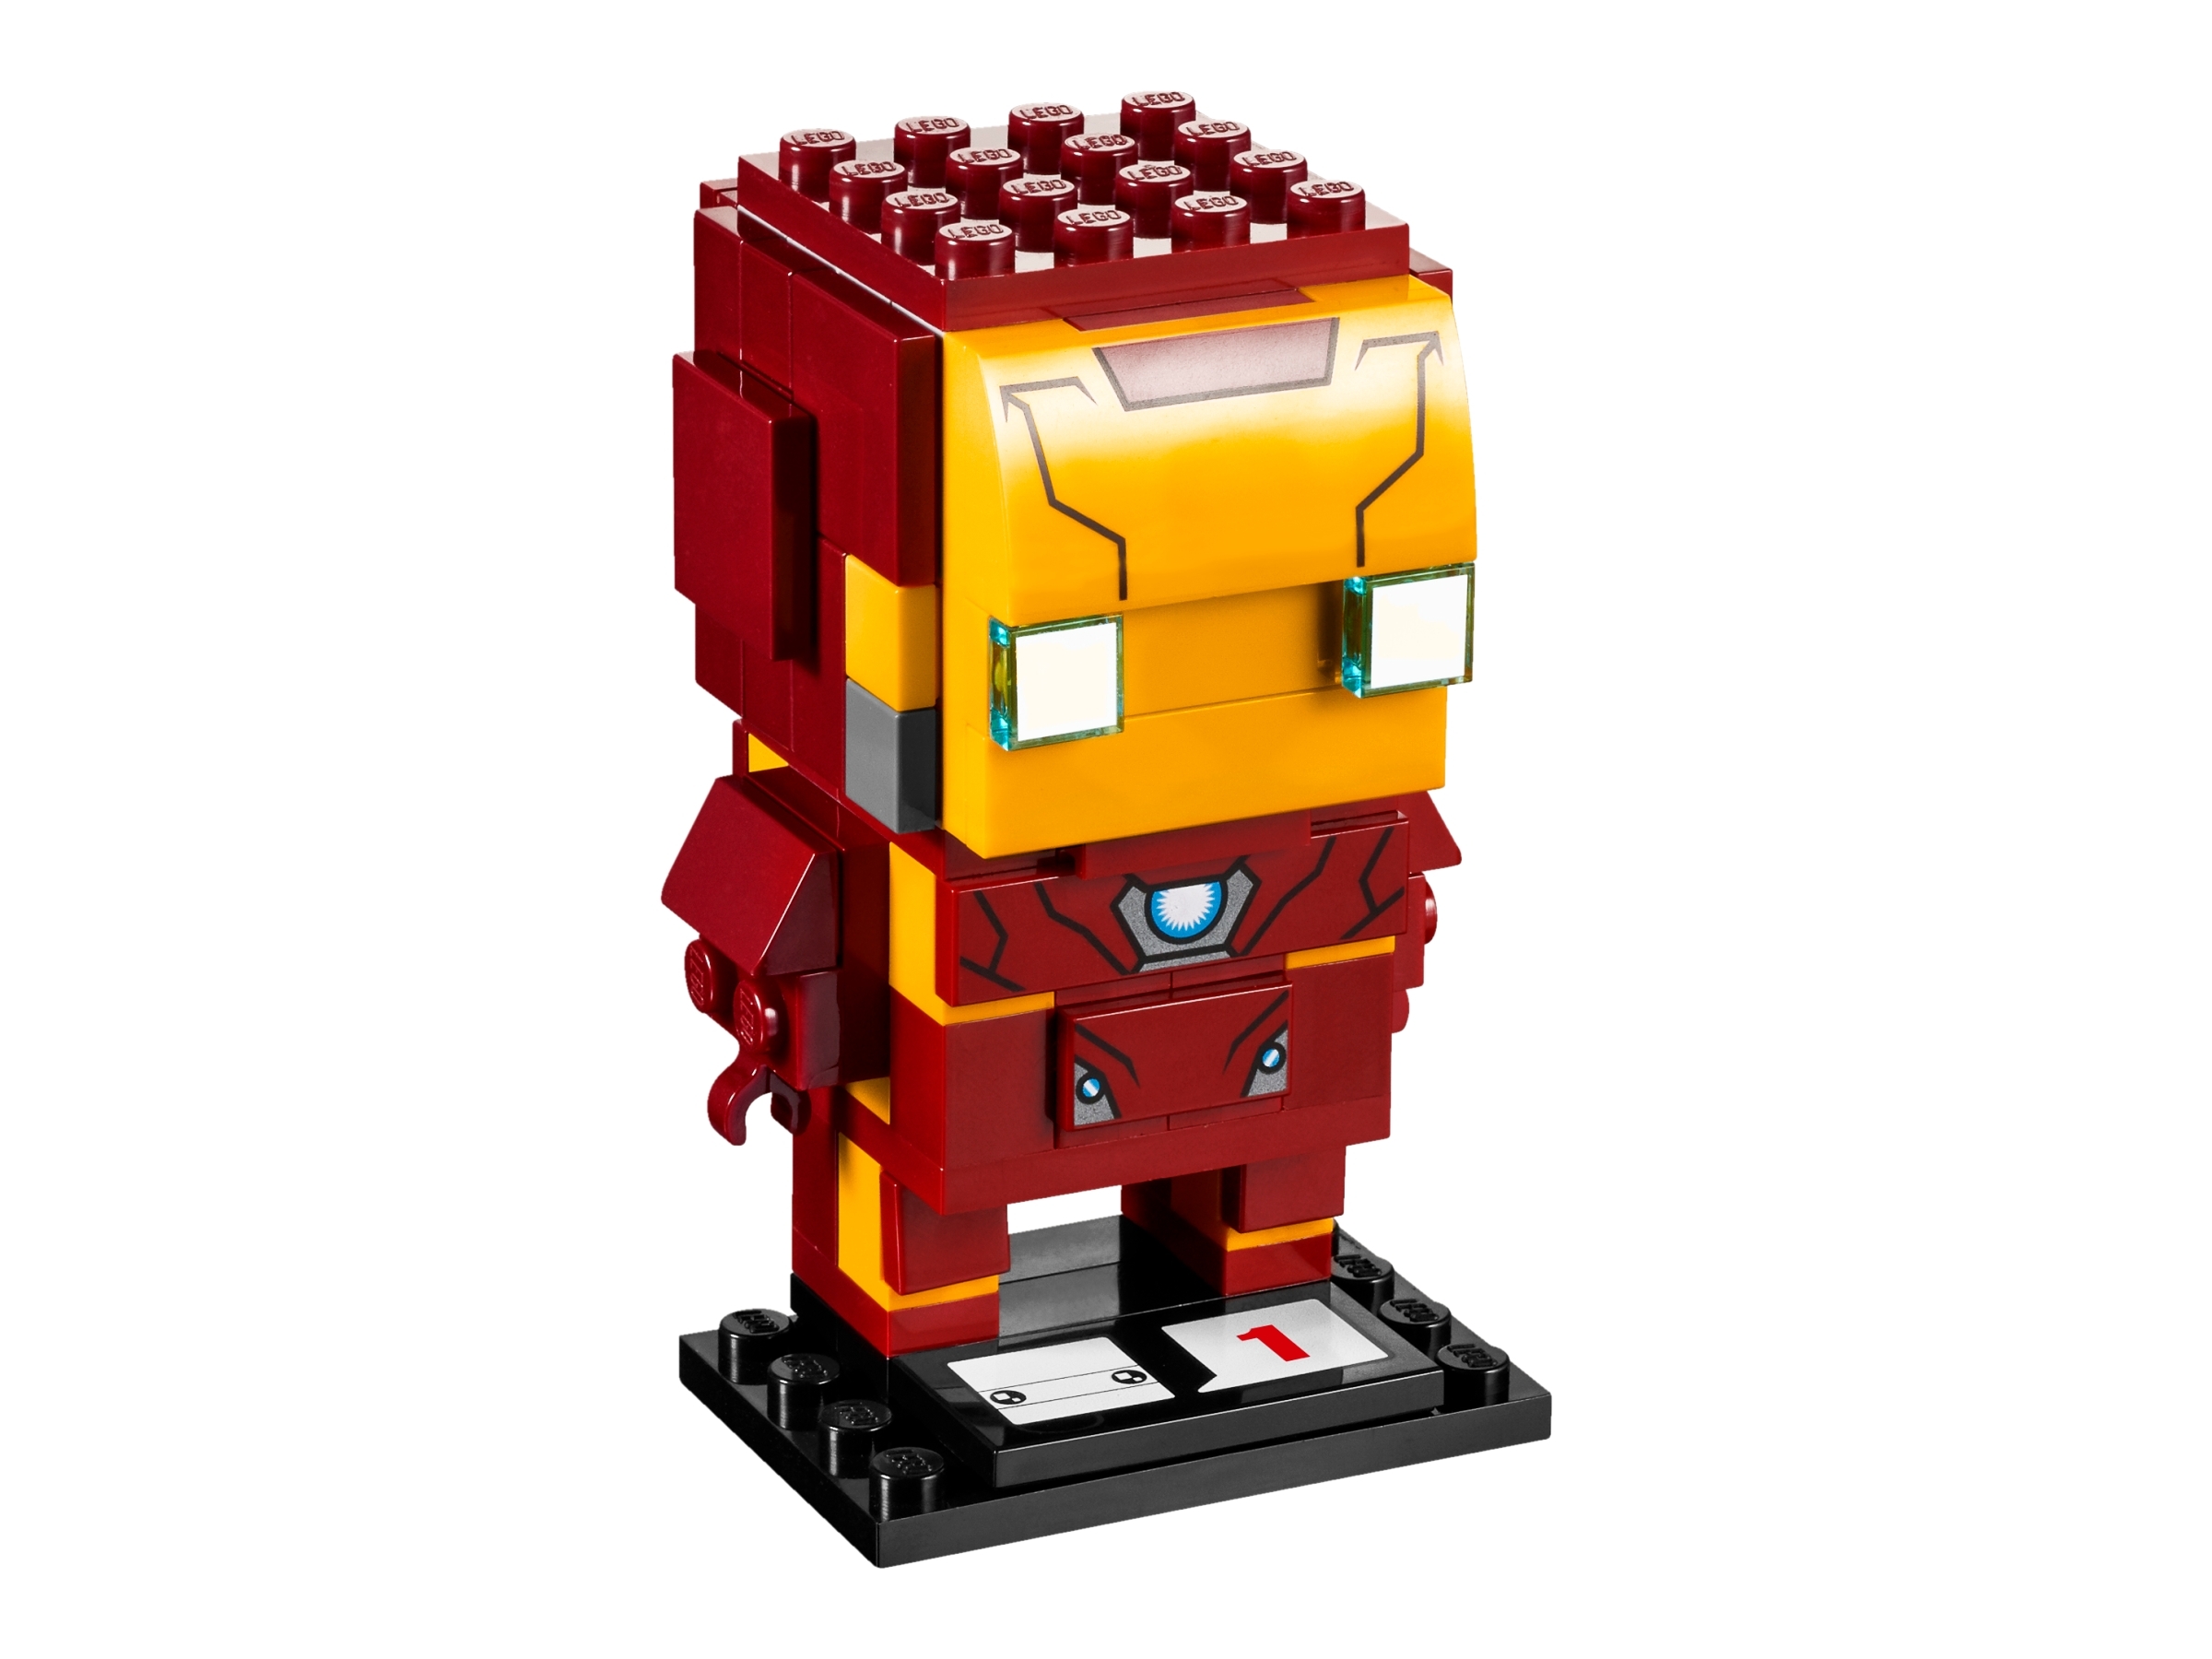 iron man lego brickheadz